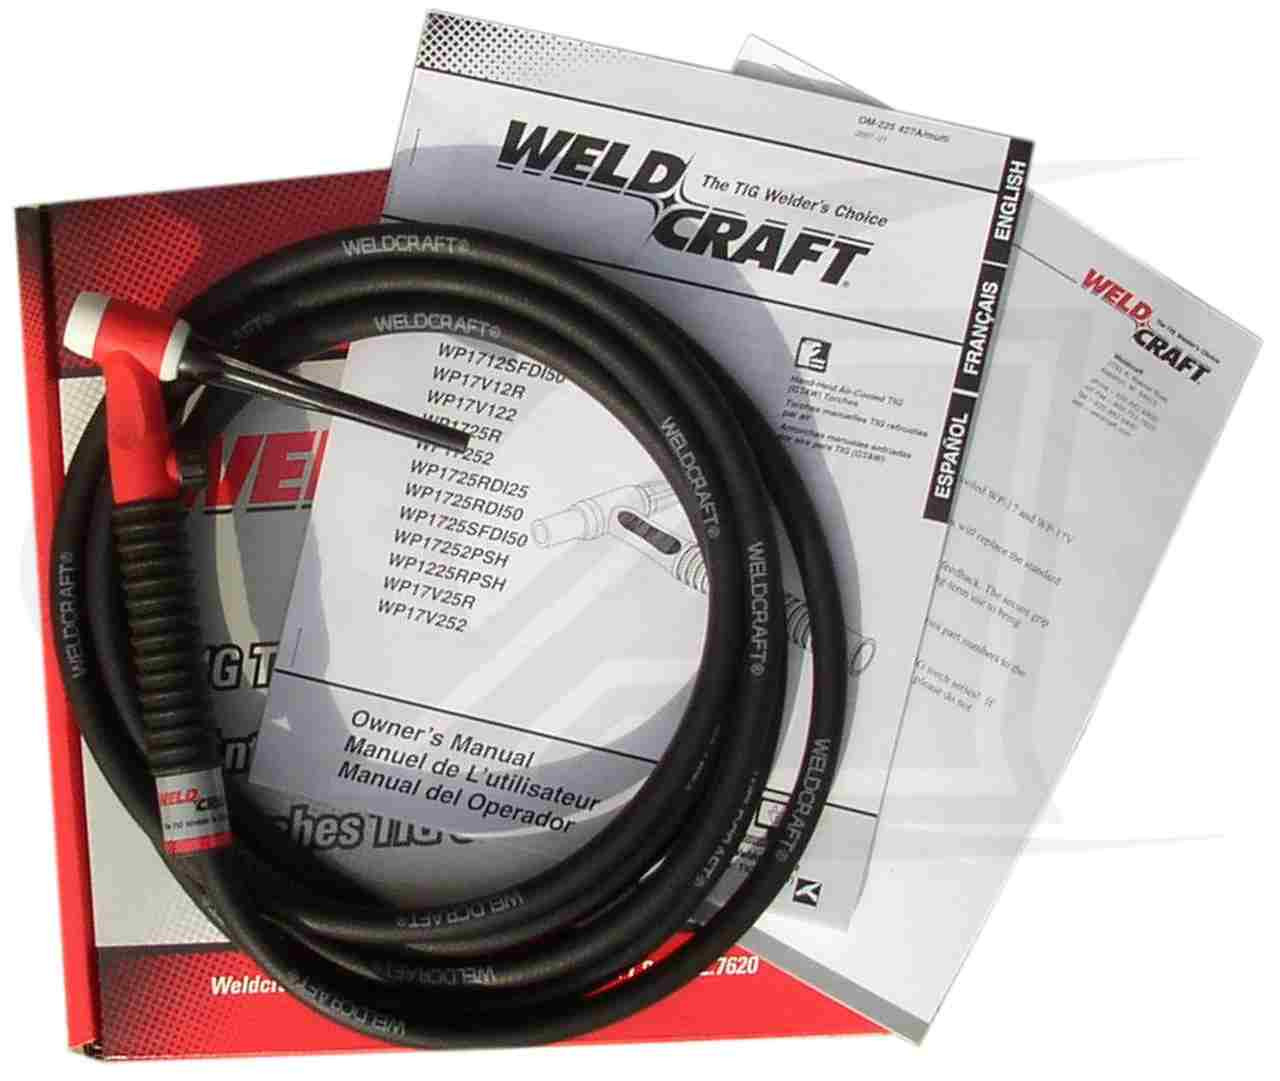 Argon Welding Tig Torch- Model name Weldcraft A150 WP 17